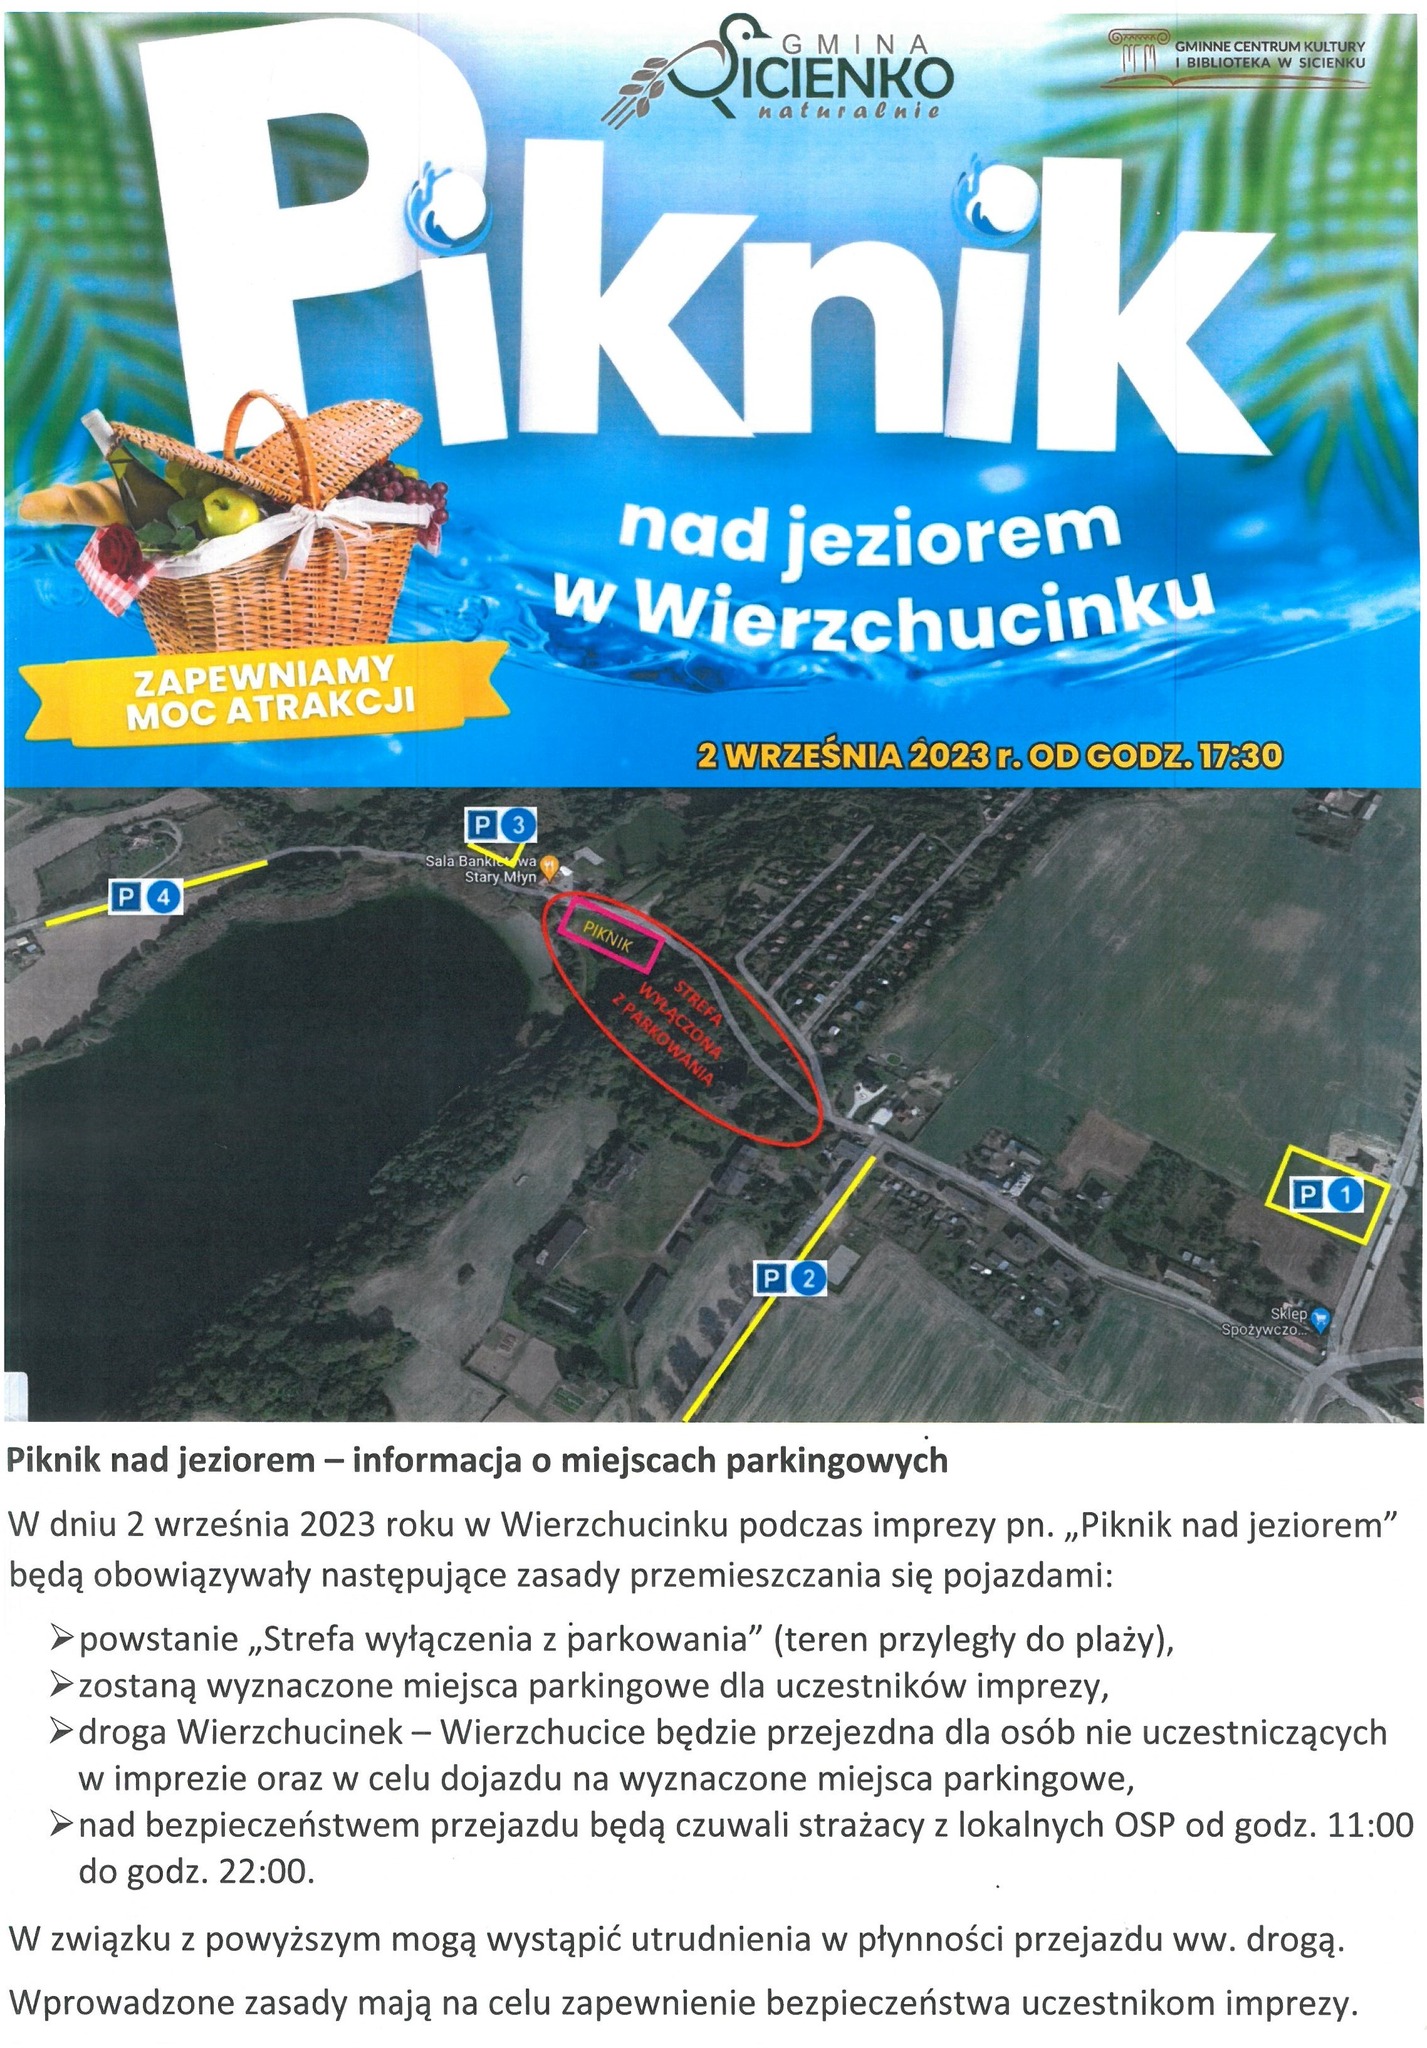 Piknik nad jeziorem w Wierzchucinku - mapka z lokalizacją miejsca imprezy i parkingów